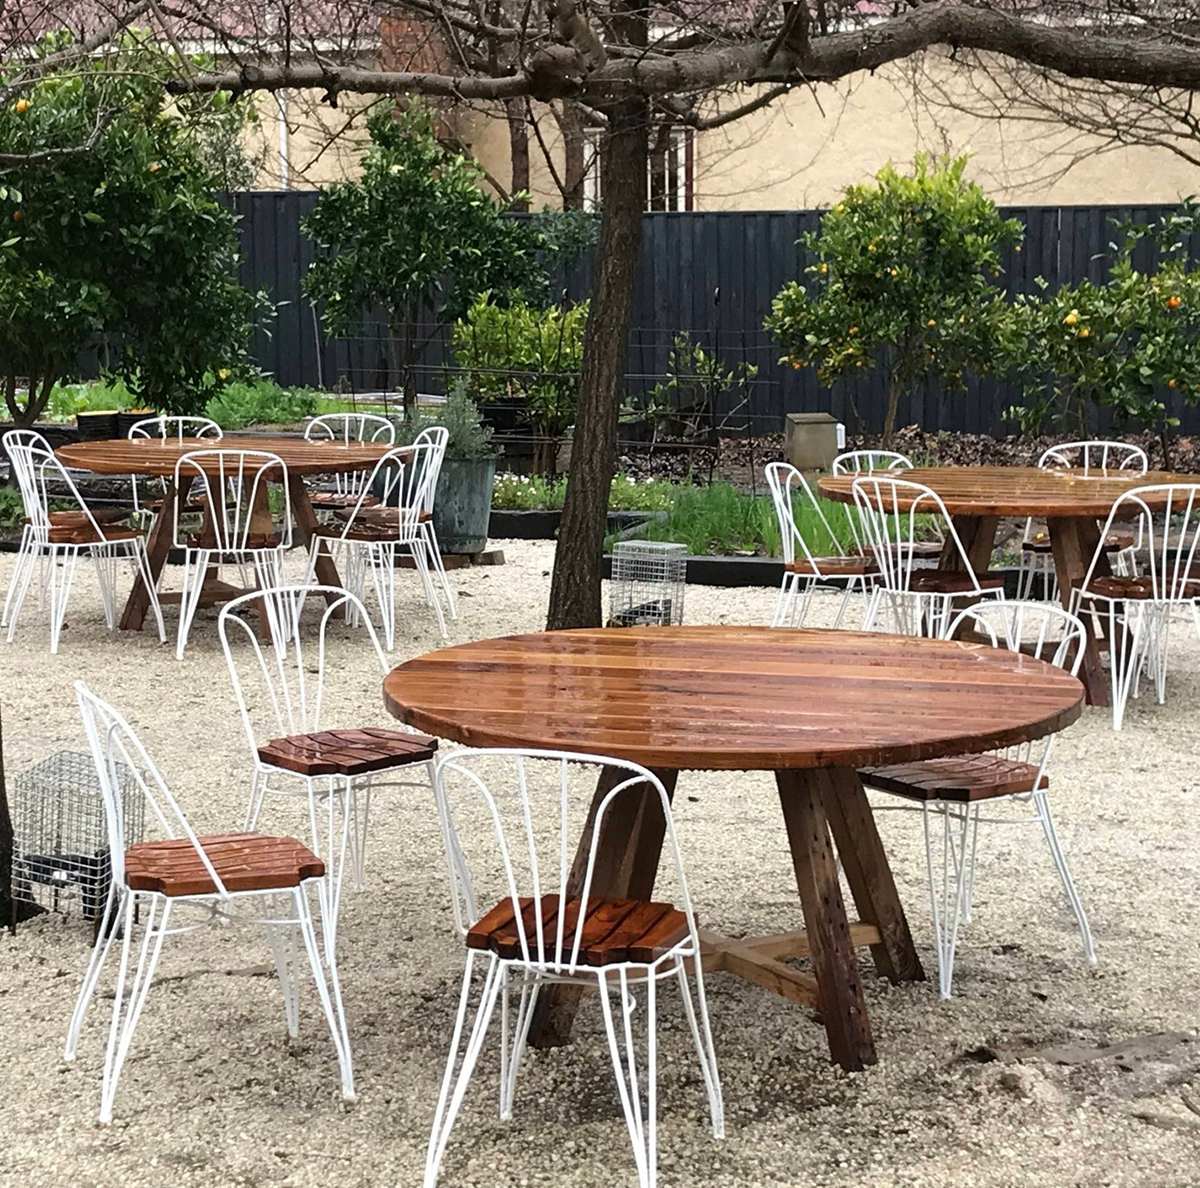 ڈیزائنر بیرونی میز اور کرسیاں